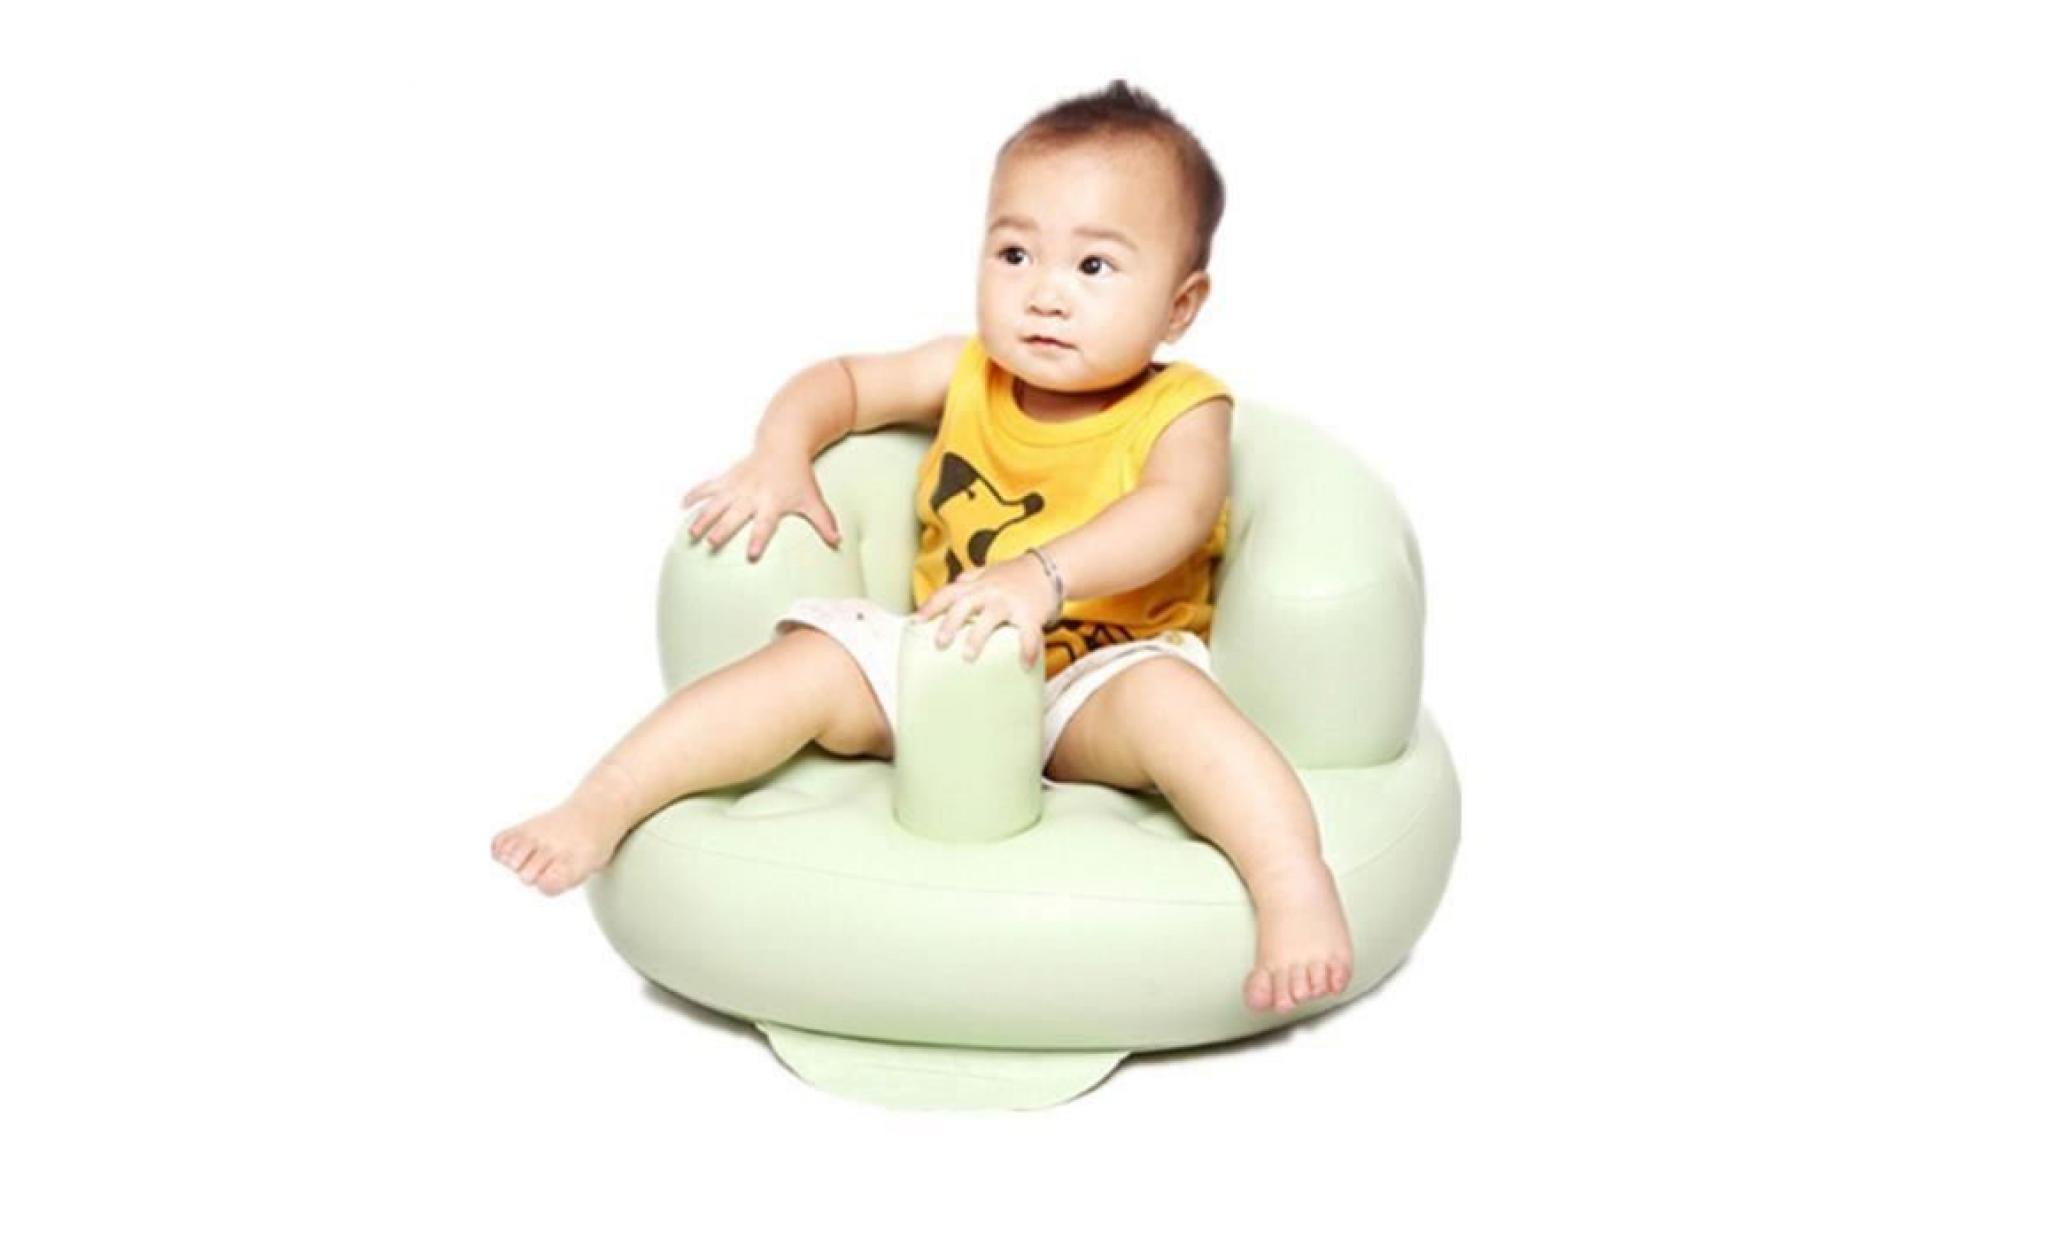 bain de siège salle à manger chaise bébé canapé gonflable poussette chaise canapé enfants apprendre selle (vert)